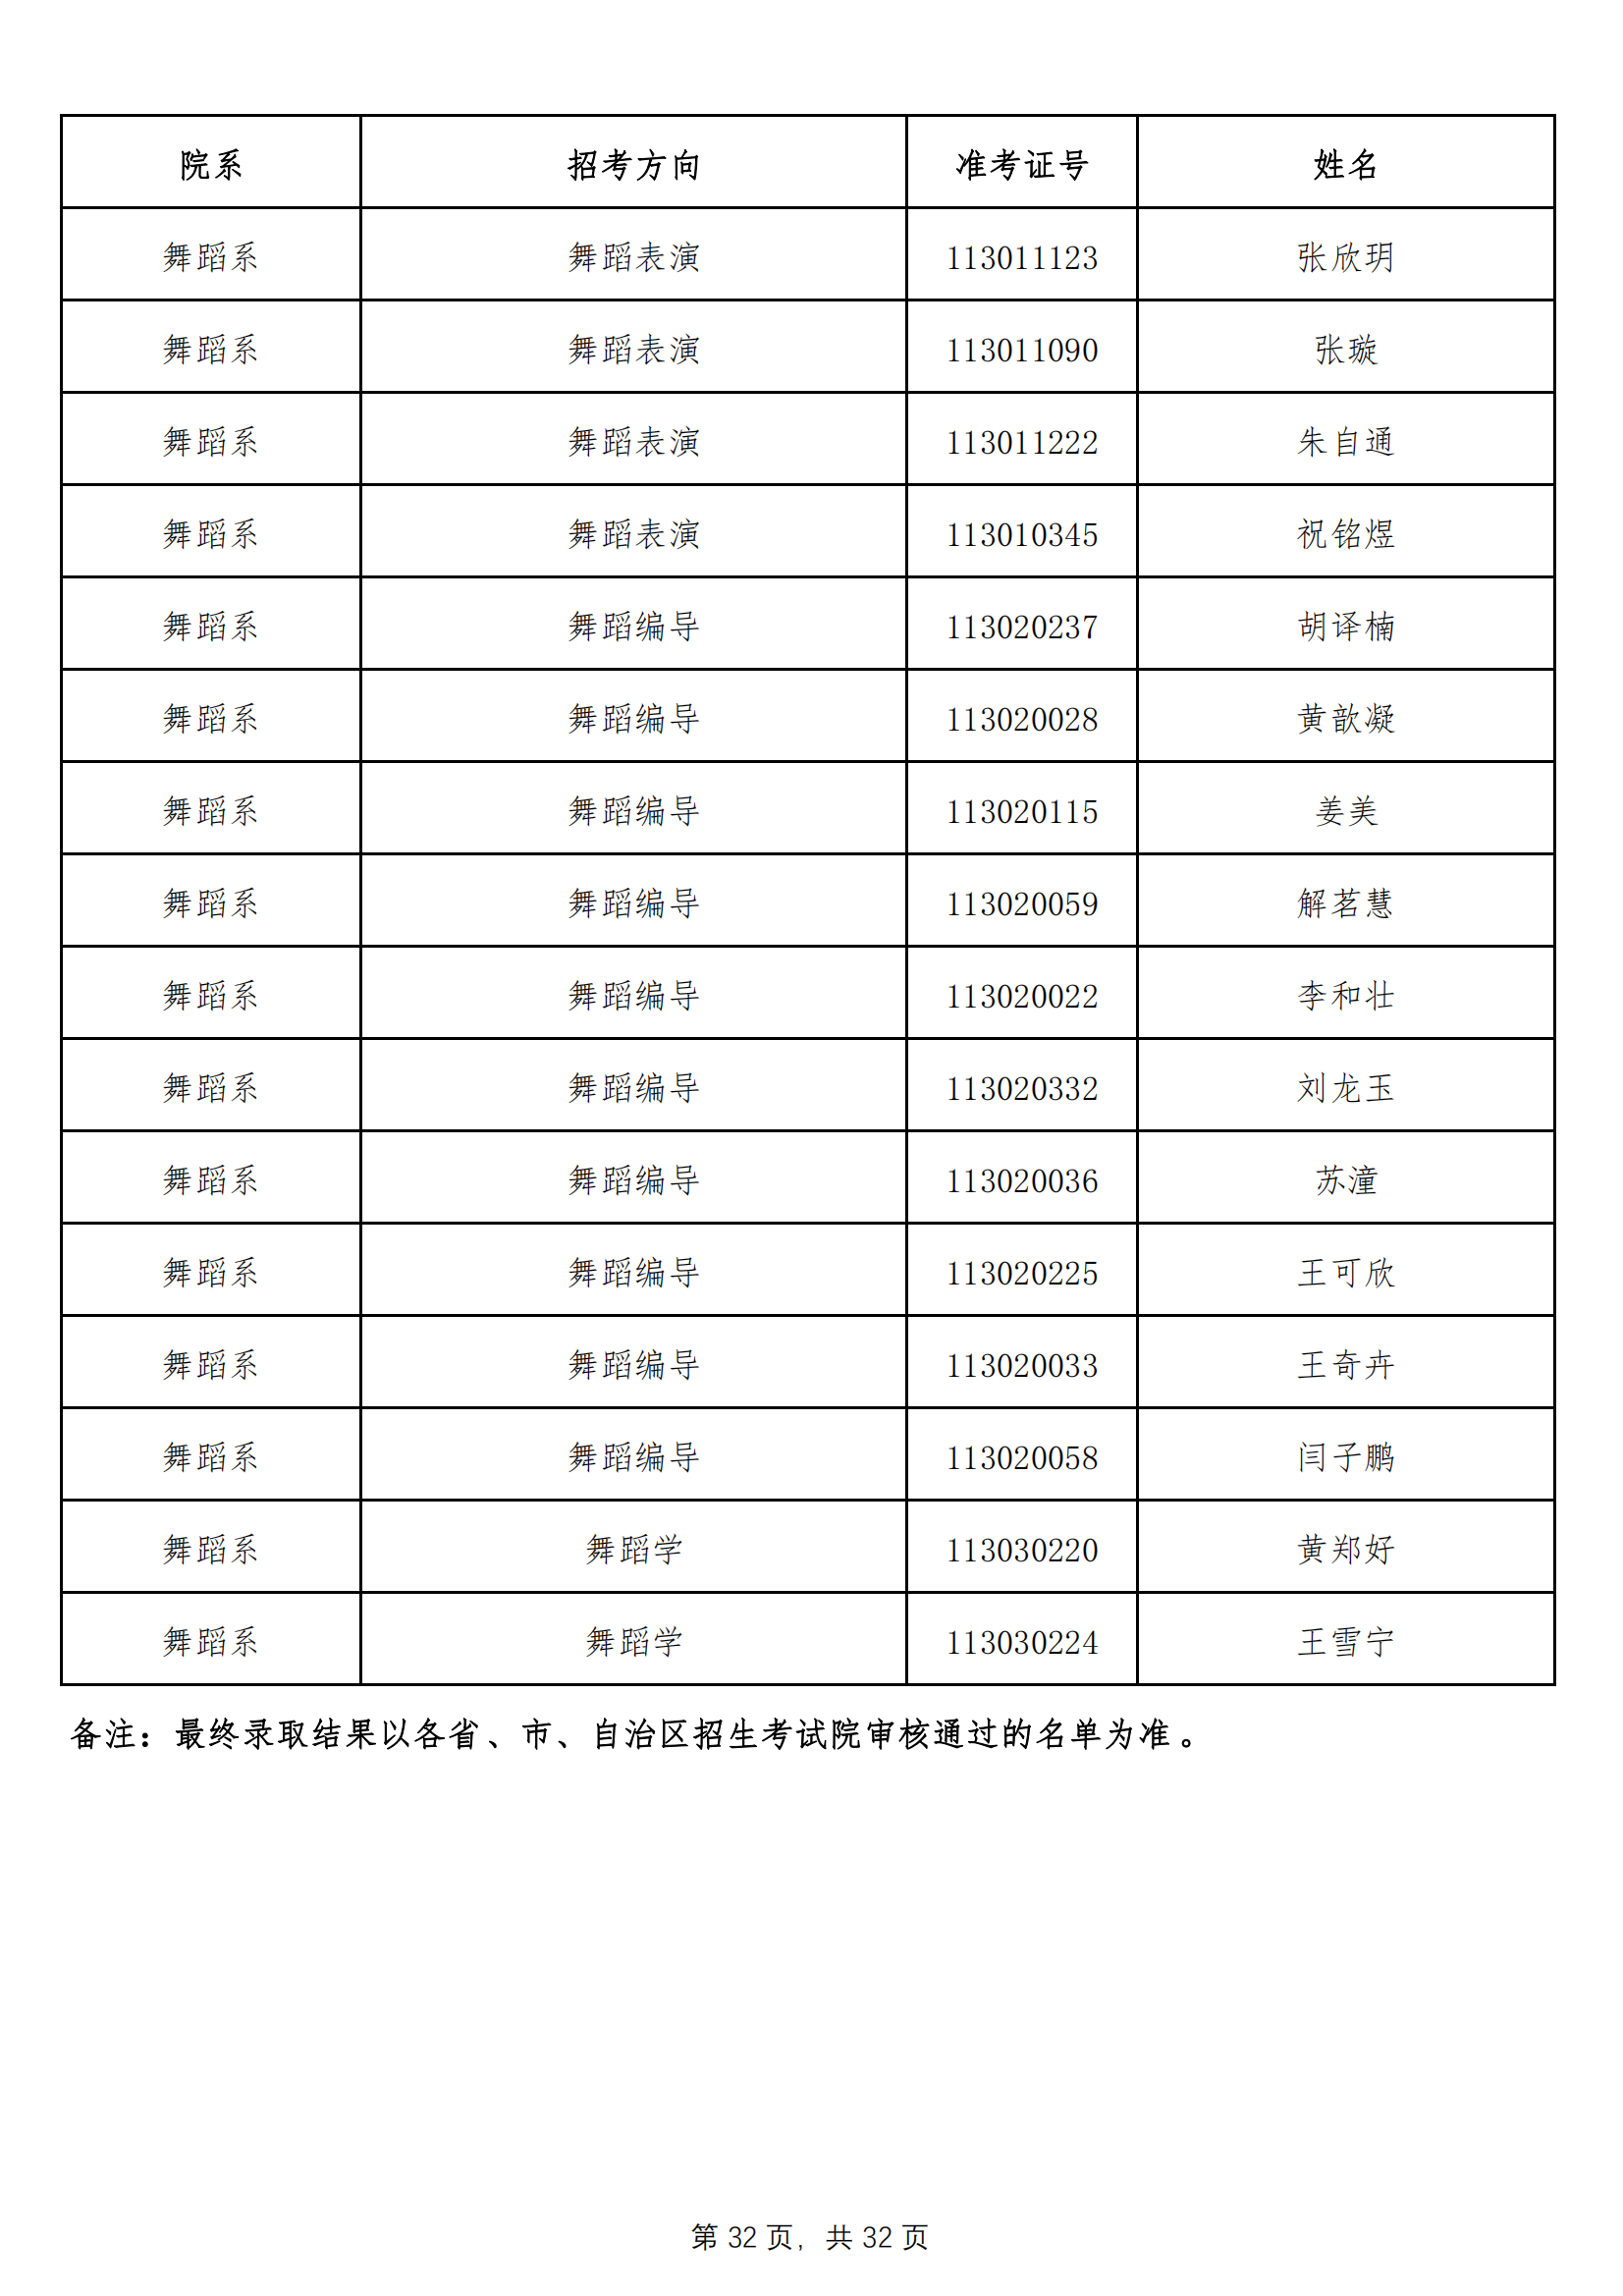 天津音乐学院2022年本科招生拟录取名单 （除上海考生外）_31.png